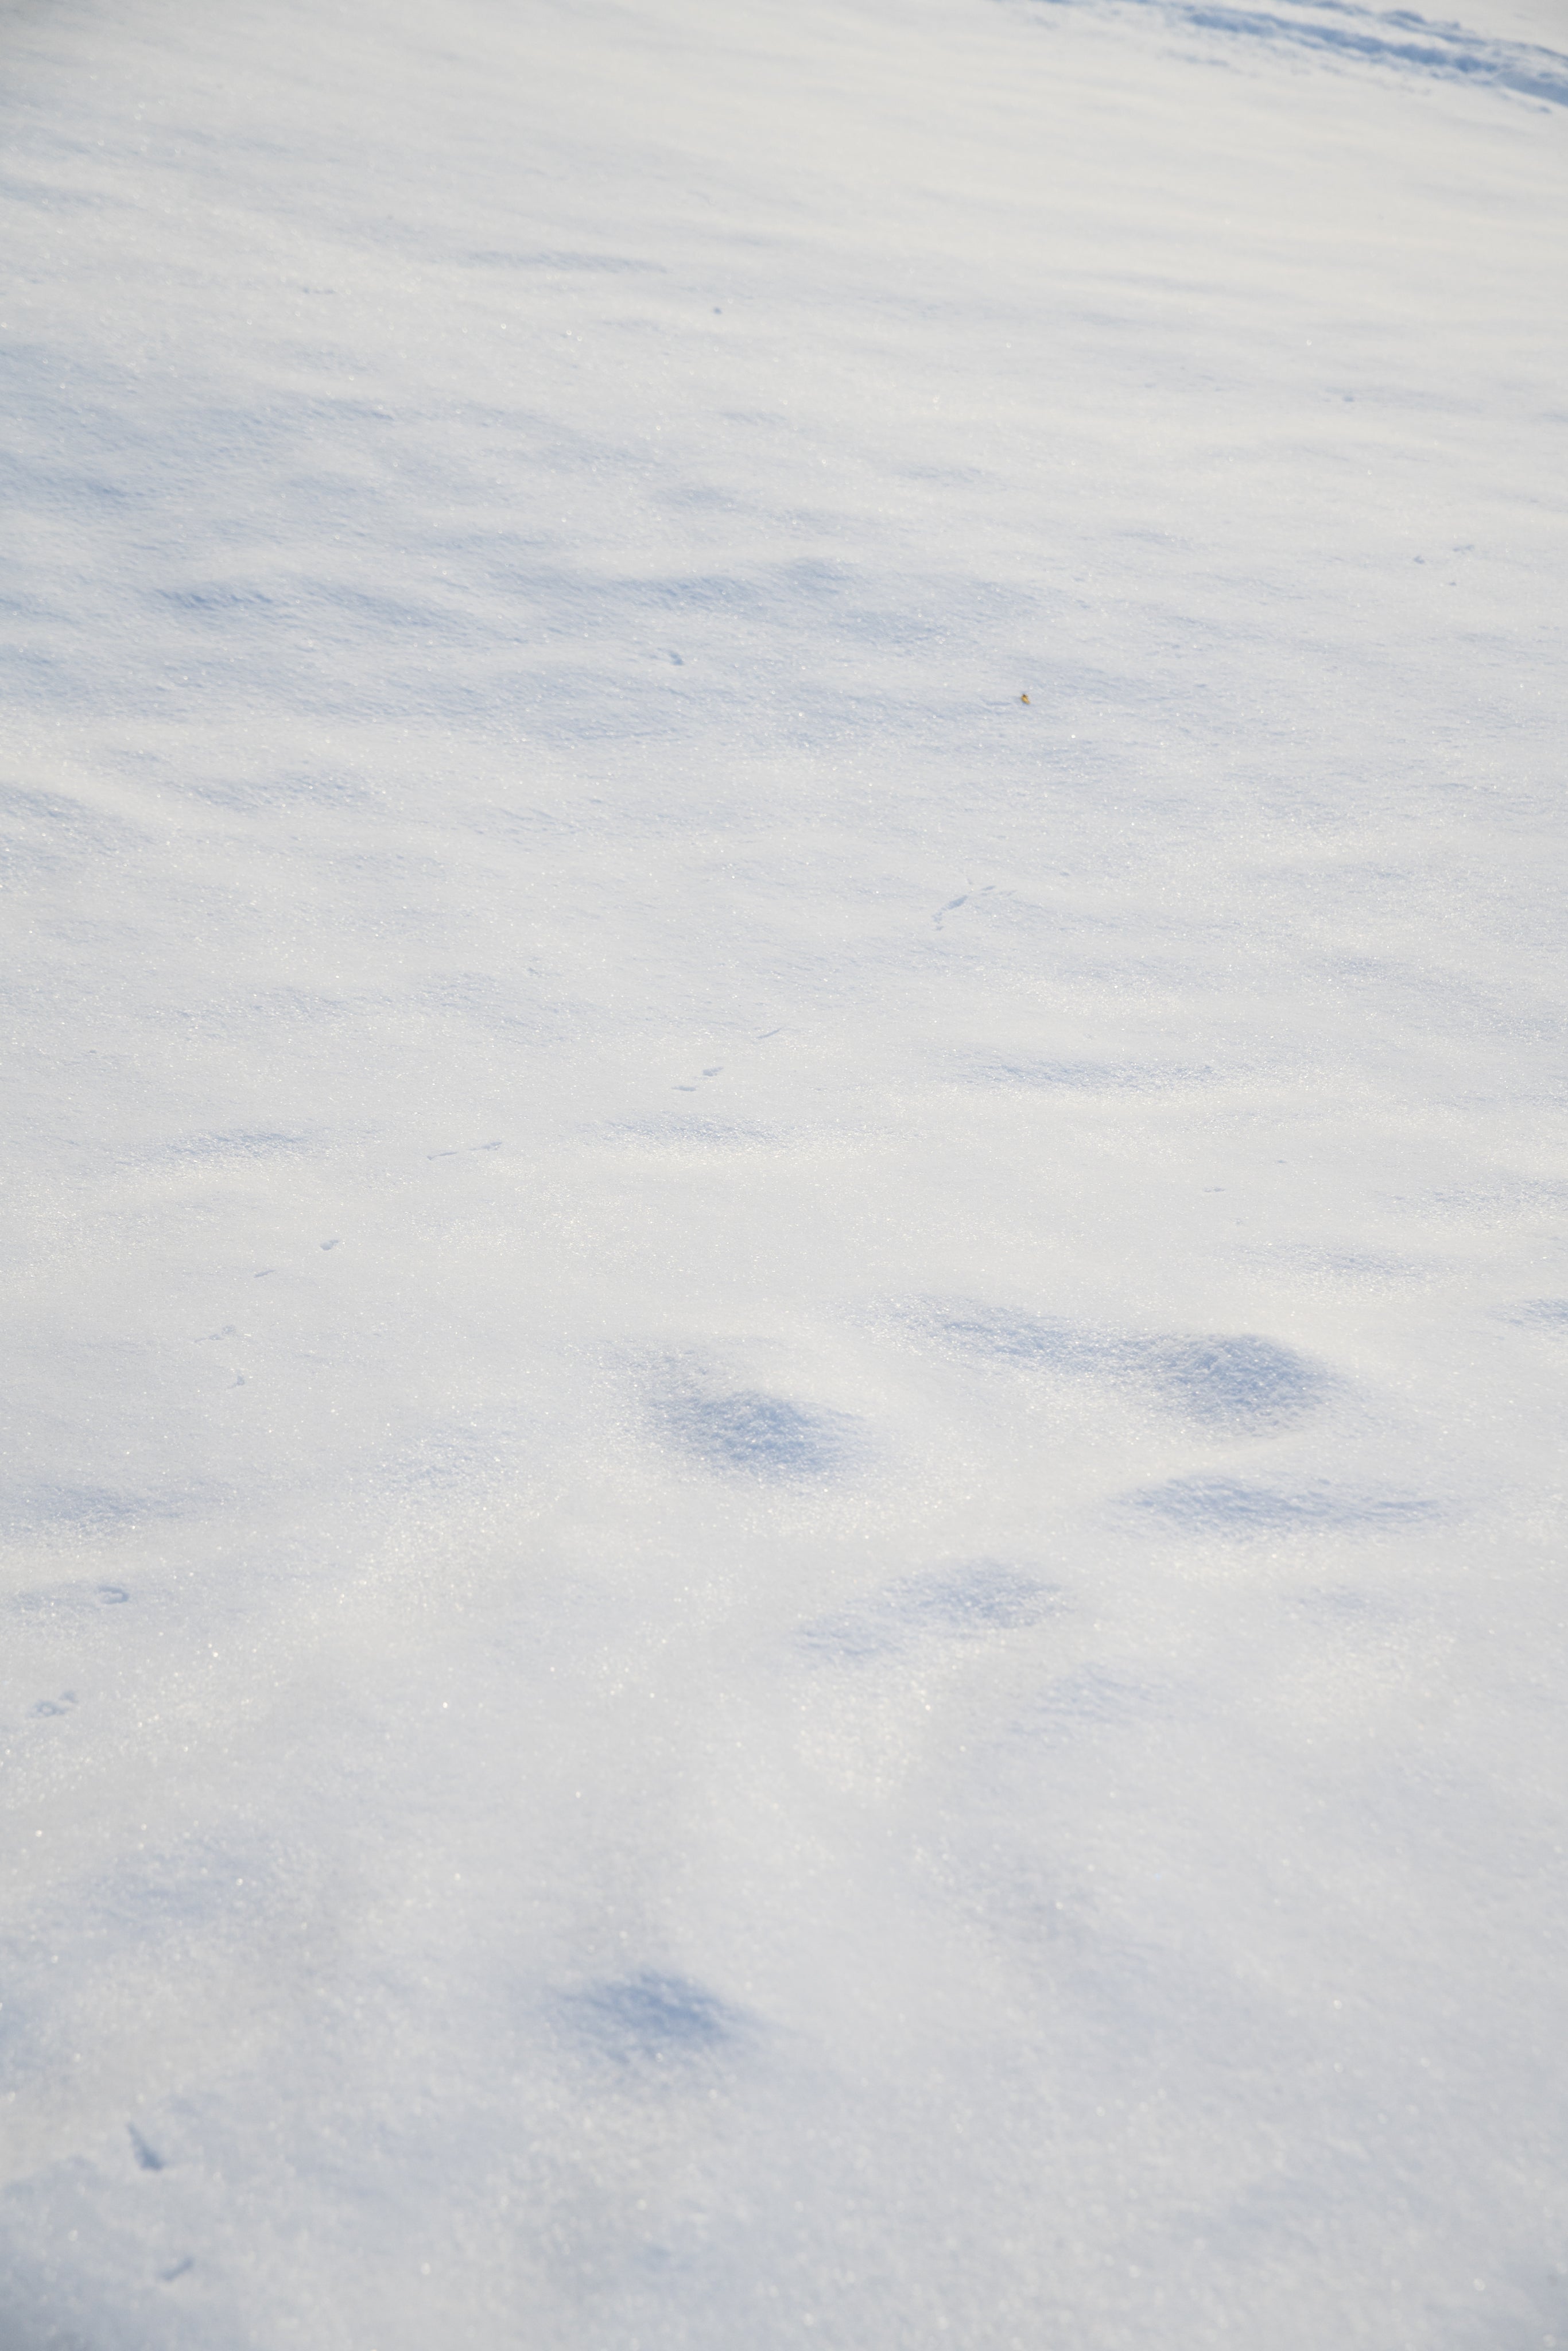 clean-white-snow-ground.jpg